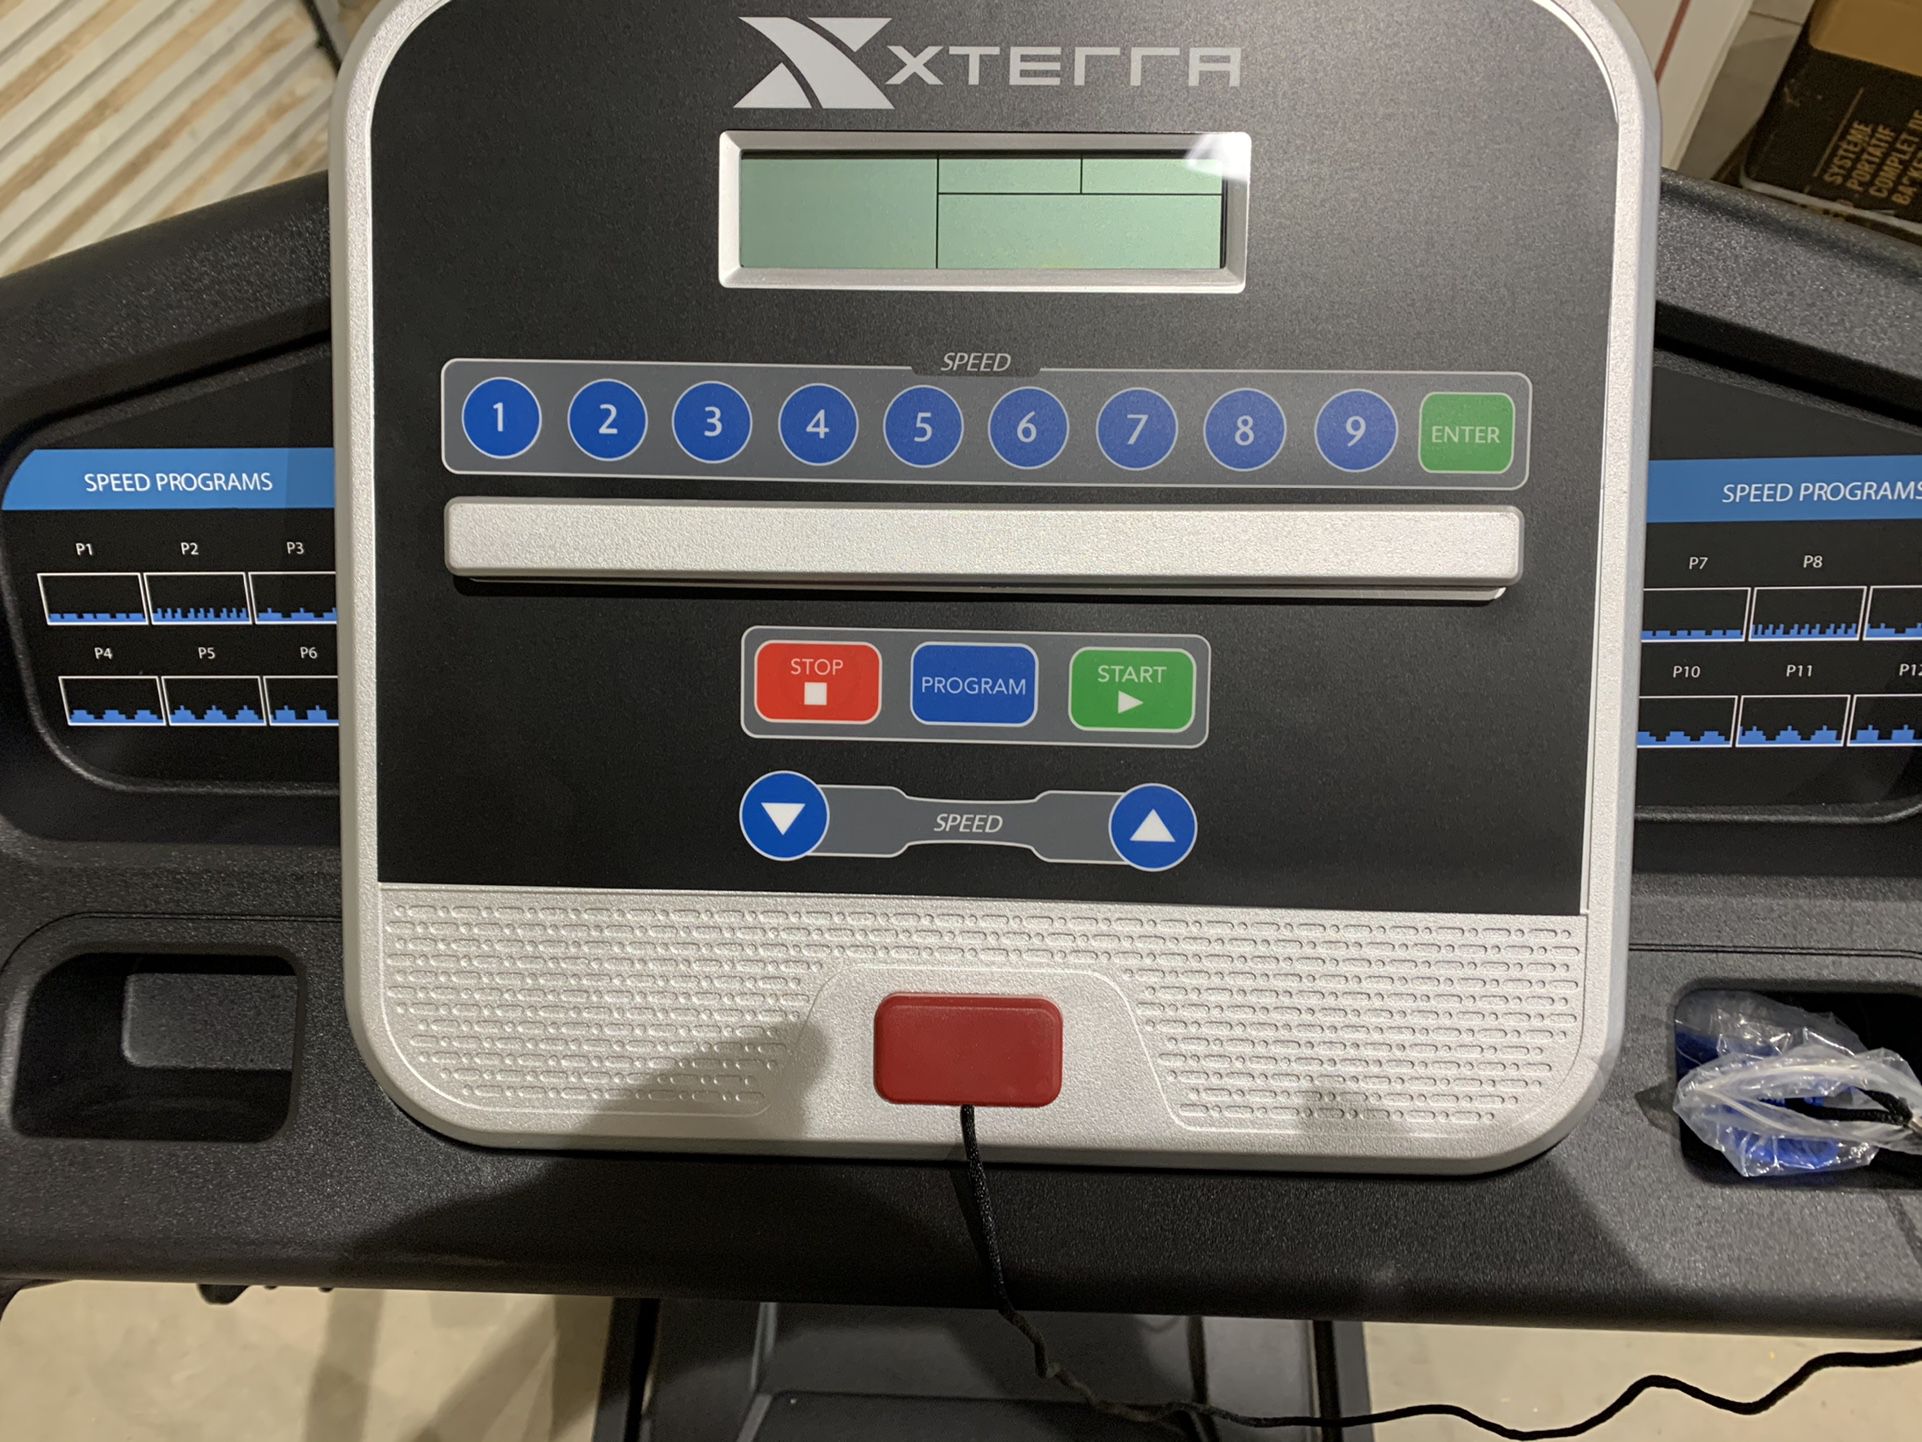 Xterra Tr150 Treadmill